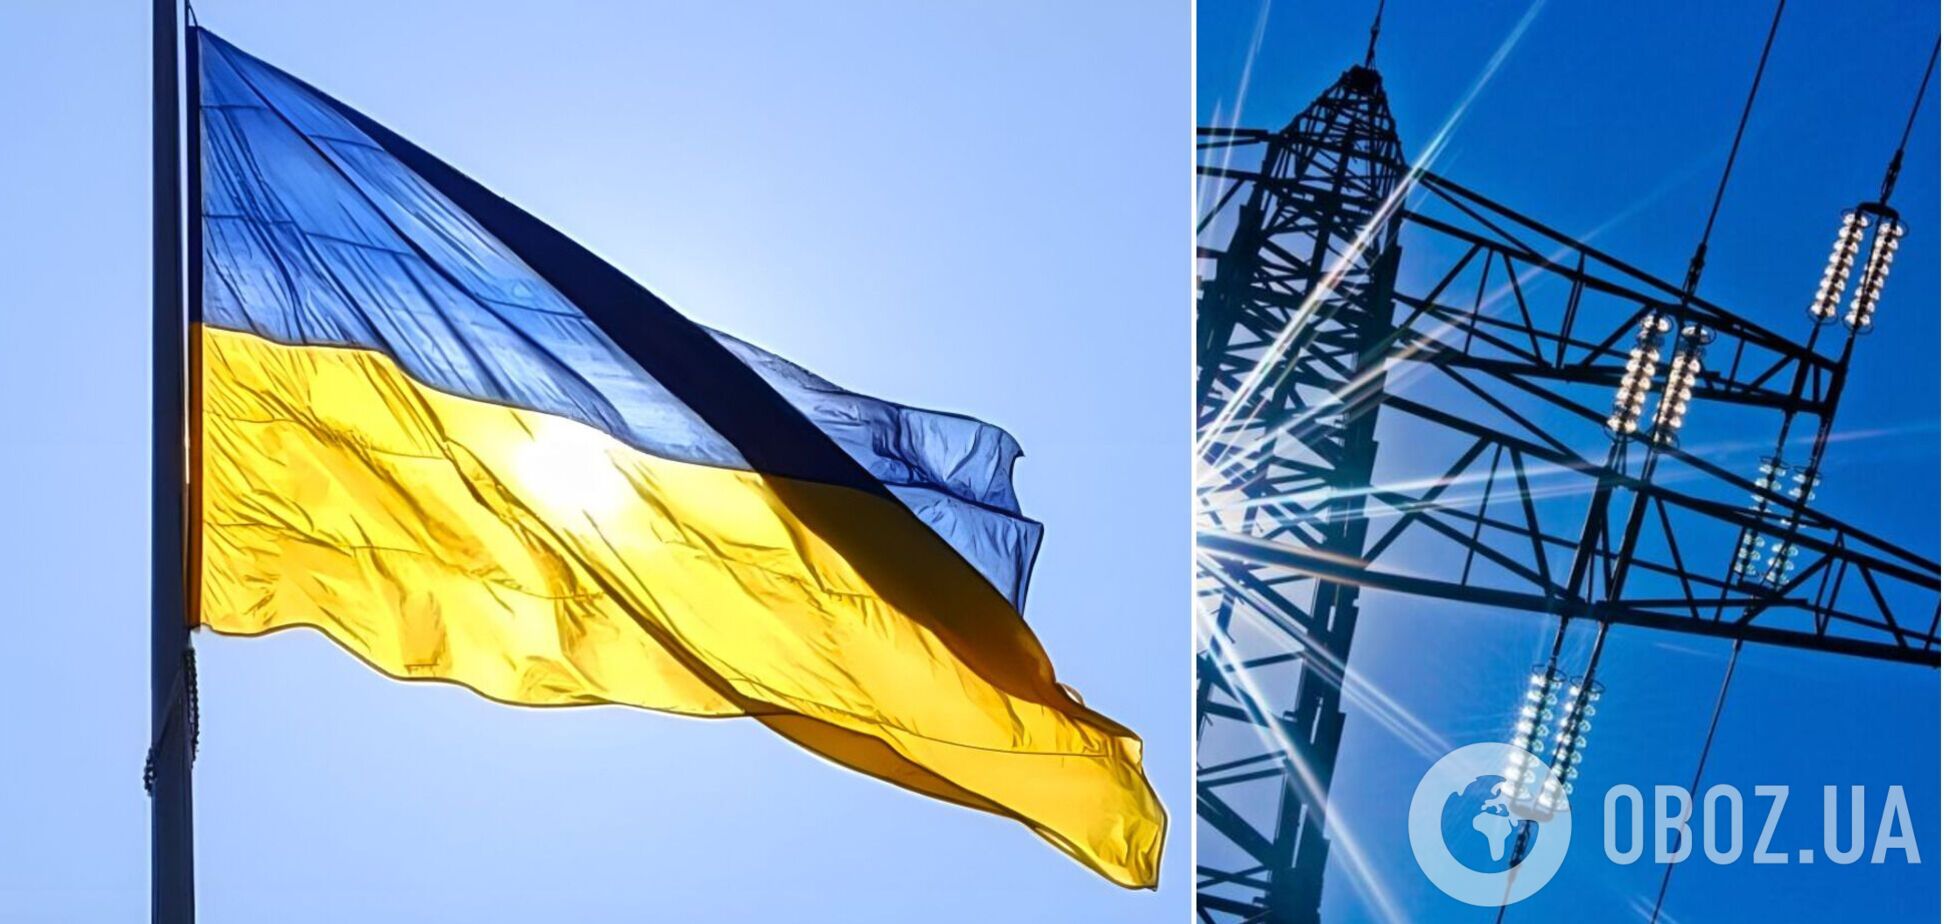 Кризове реформування: як Україна проведе швидку децентралізацію енергомережі